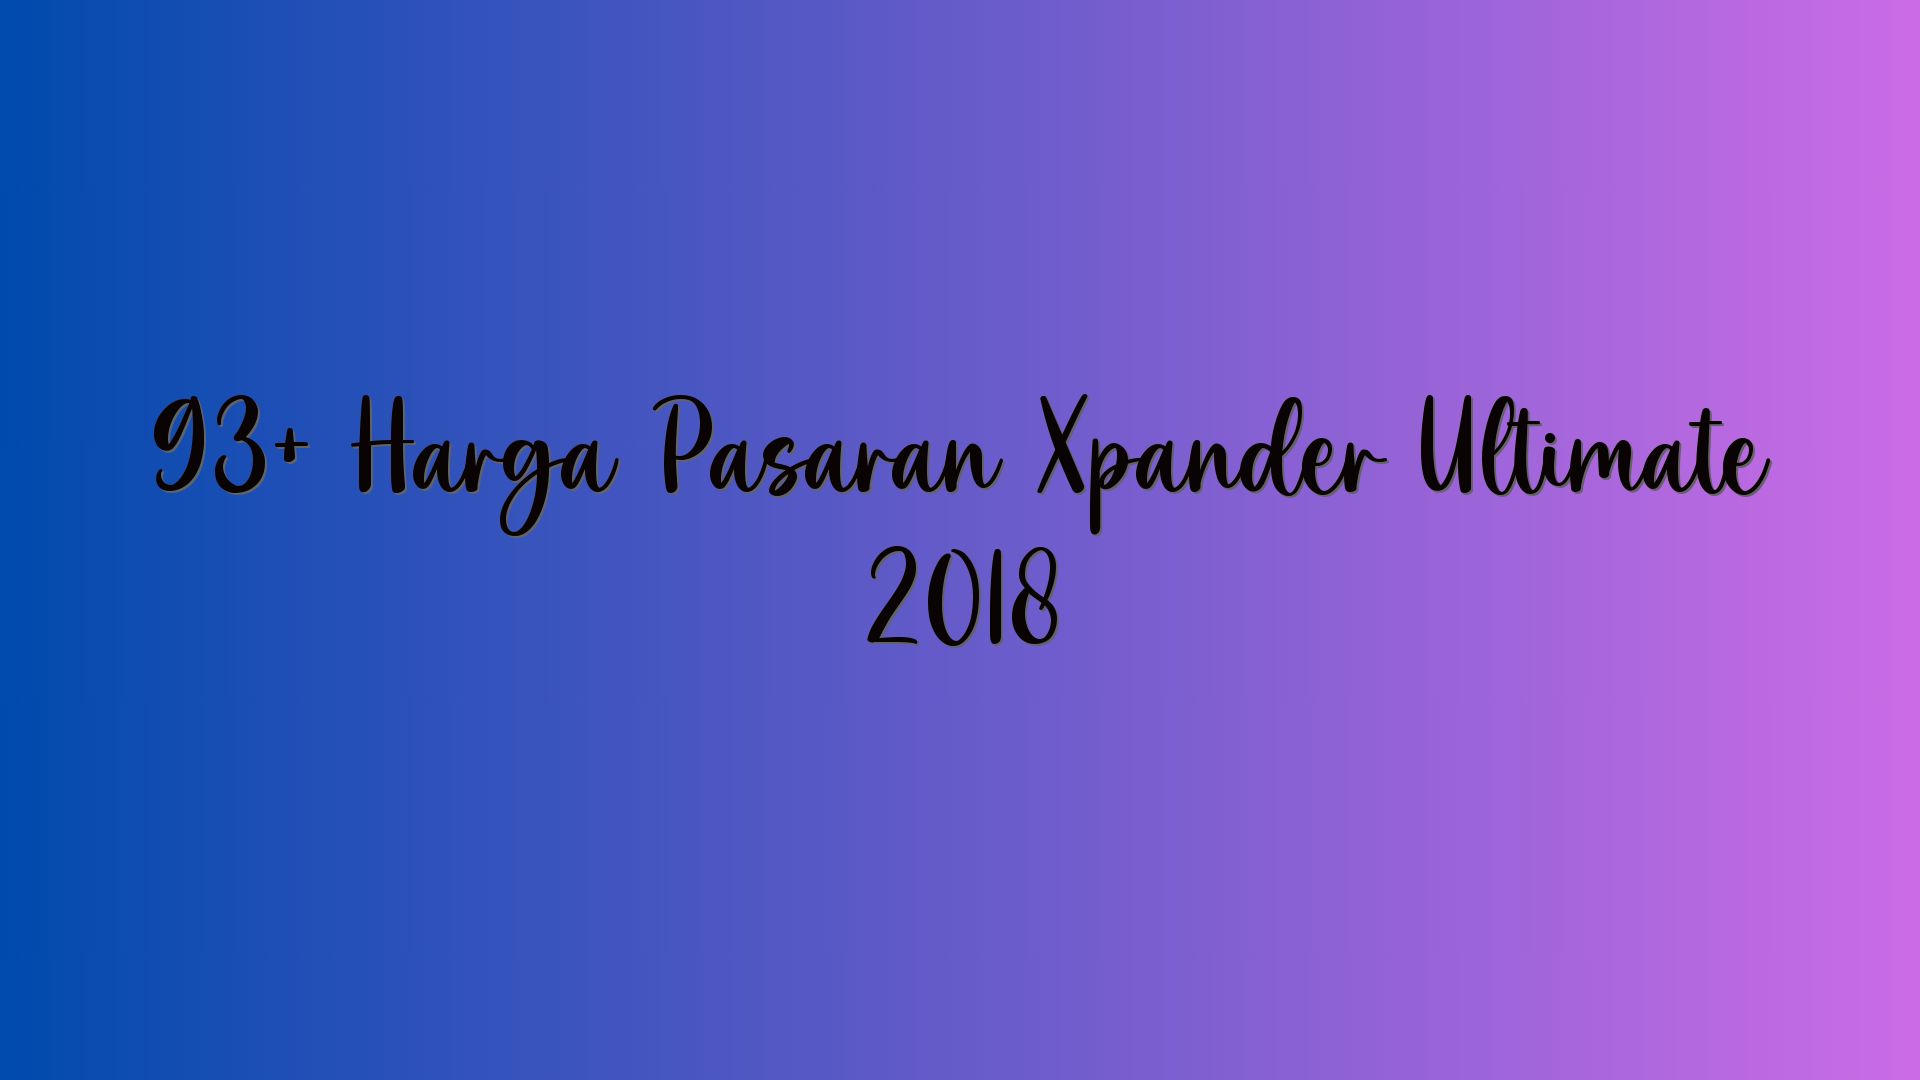 93+ Harga Pasaran Xpander Ultimate 2018